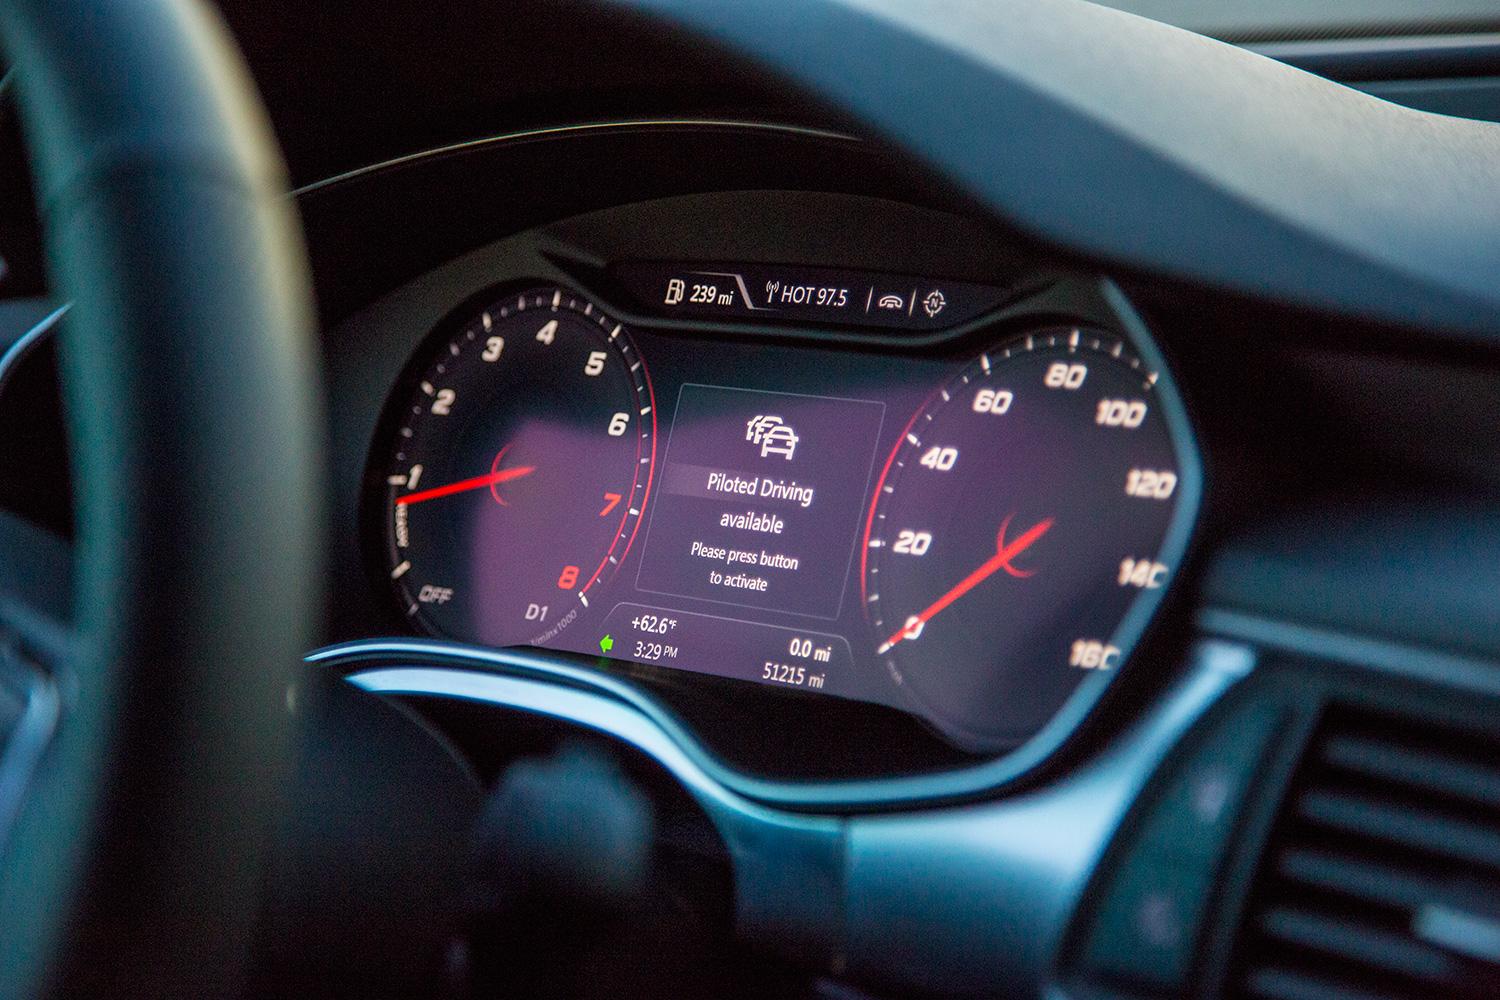 Audi A7 Autonomous piloted driving available